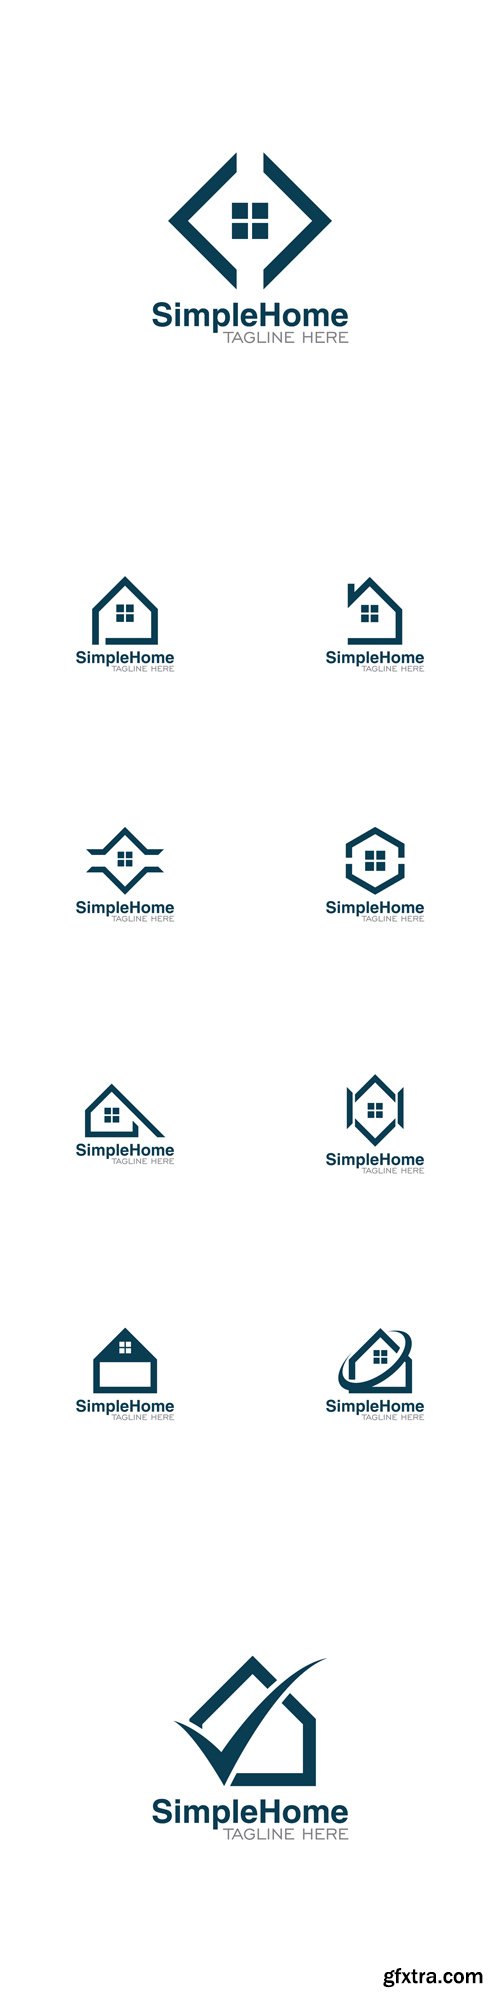 Vector Set - Simple Home Creative Concept Logo Design